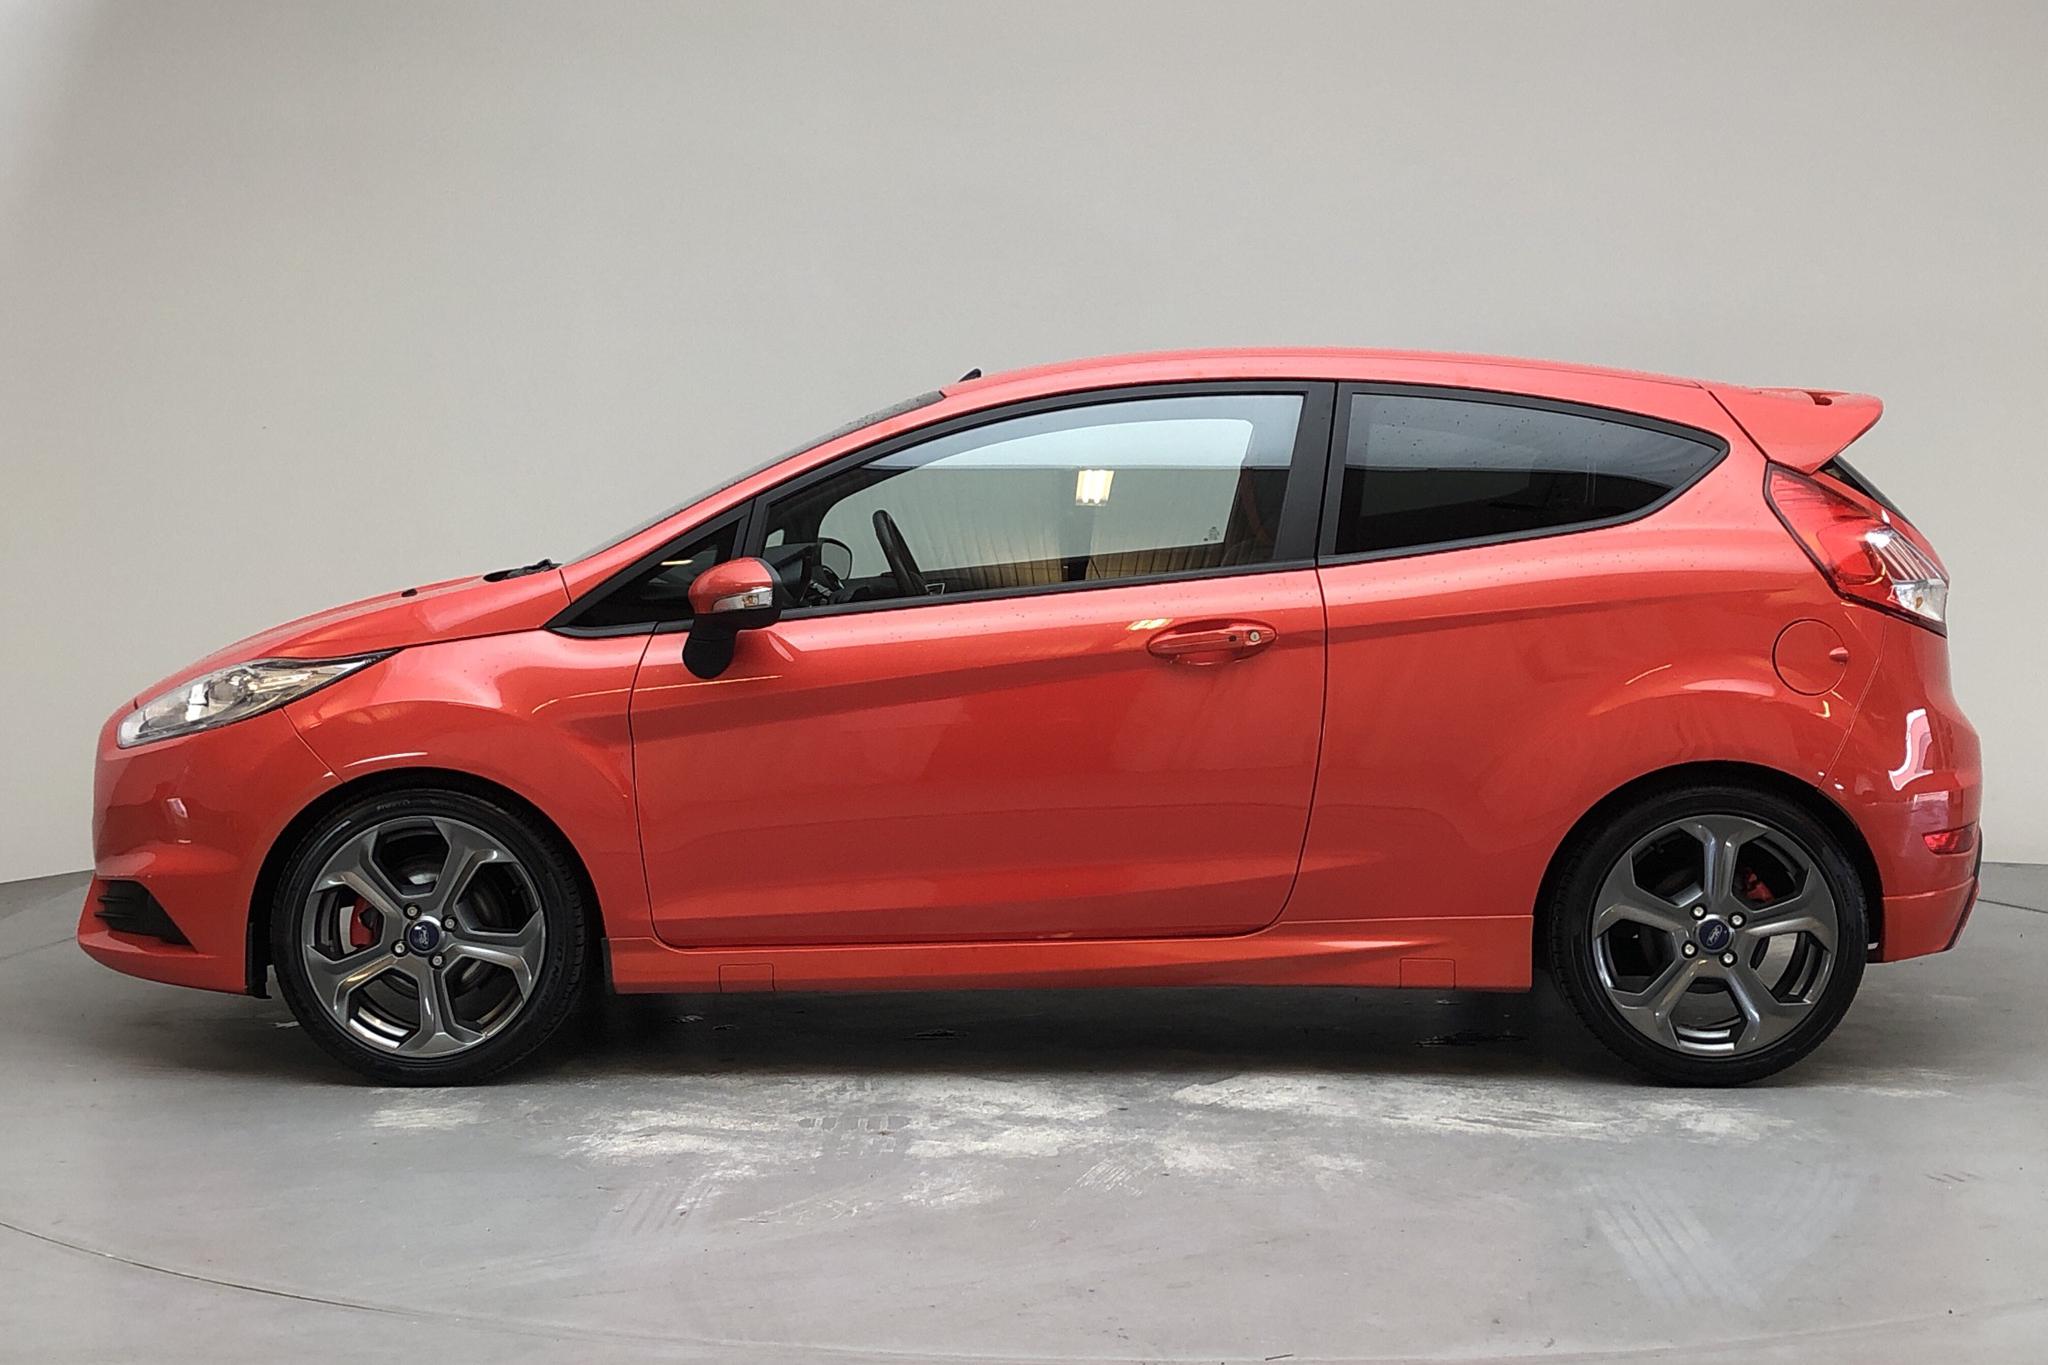 Ford Fiesta 1.6 ST 3dr (182hk) - 74 260 km - Manual - orange - 2016